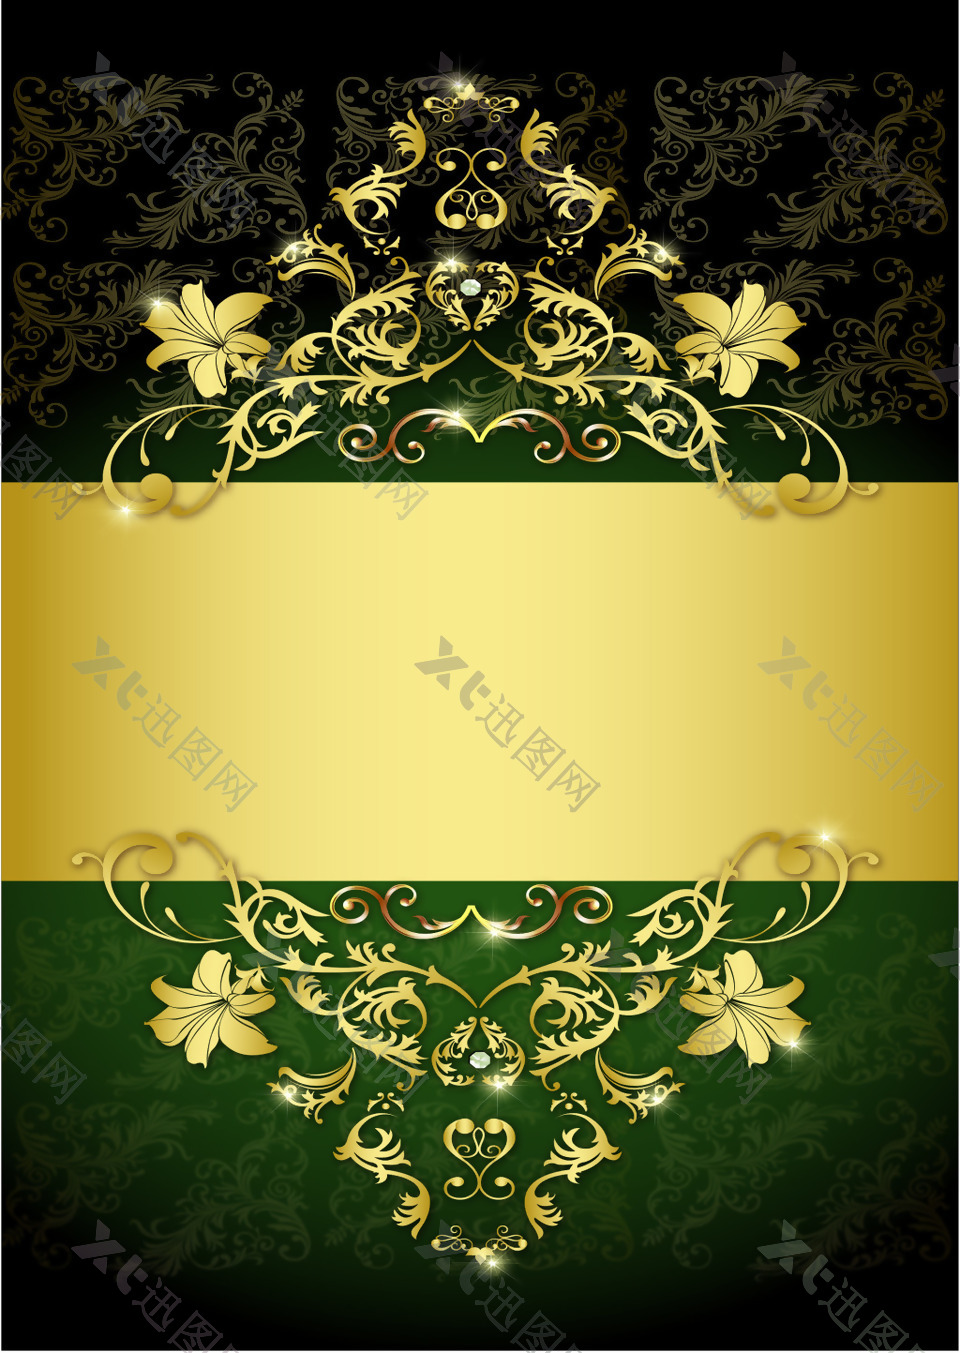 矢量金色质感花纹黑绿相间背景素材